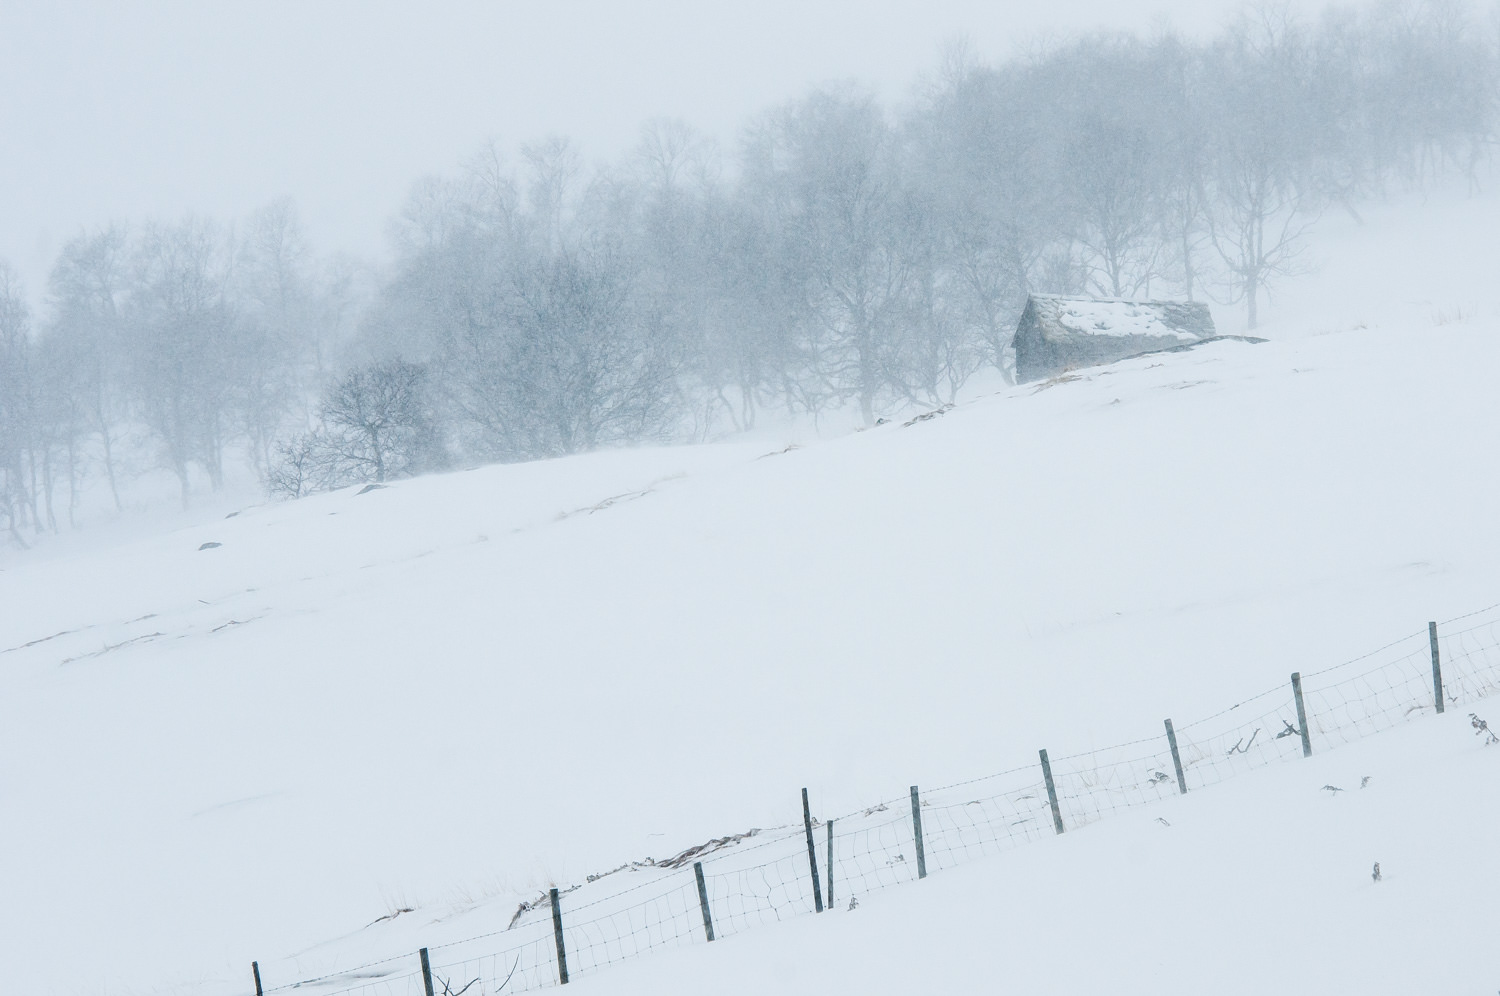 Vang i Norge. Sneen i sig selv medvirker til ro i billedet, og snestormen, der slører detaljerne med den fygende sne, gør det hele endnu mere minimalistisk. Grej: Nikon D300s + Nikkor 70-200 f/2.8 VRII. Indstillinger: 1/500 sek., f/8, ISO-200, 150mm.